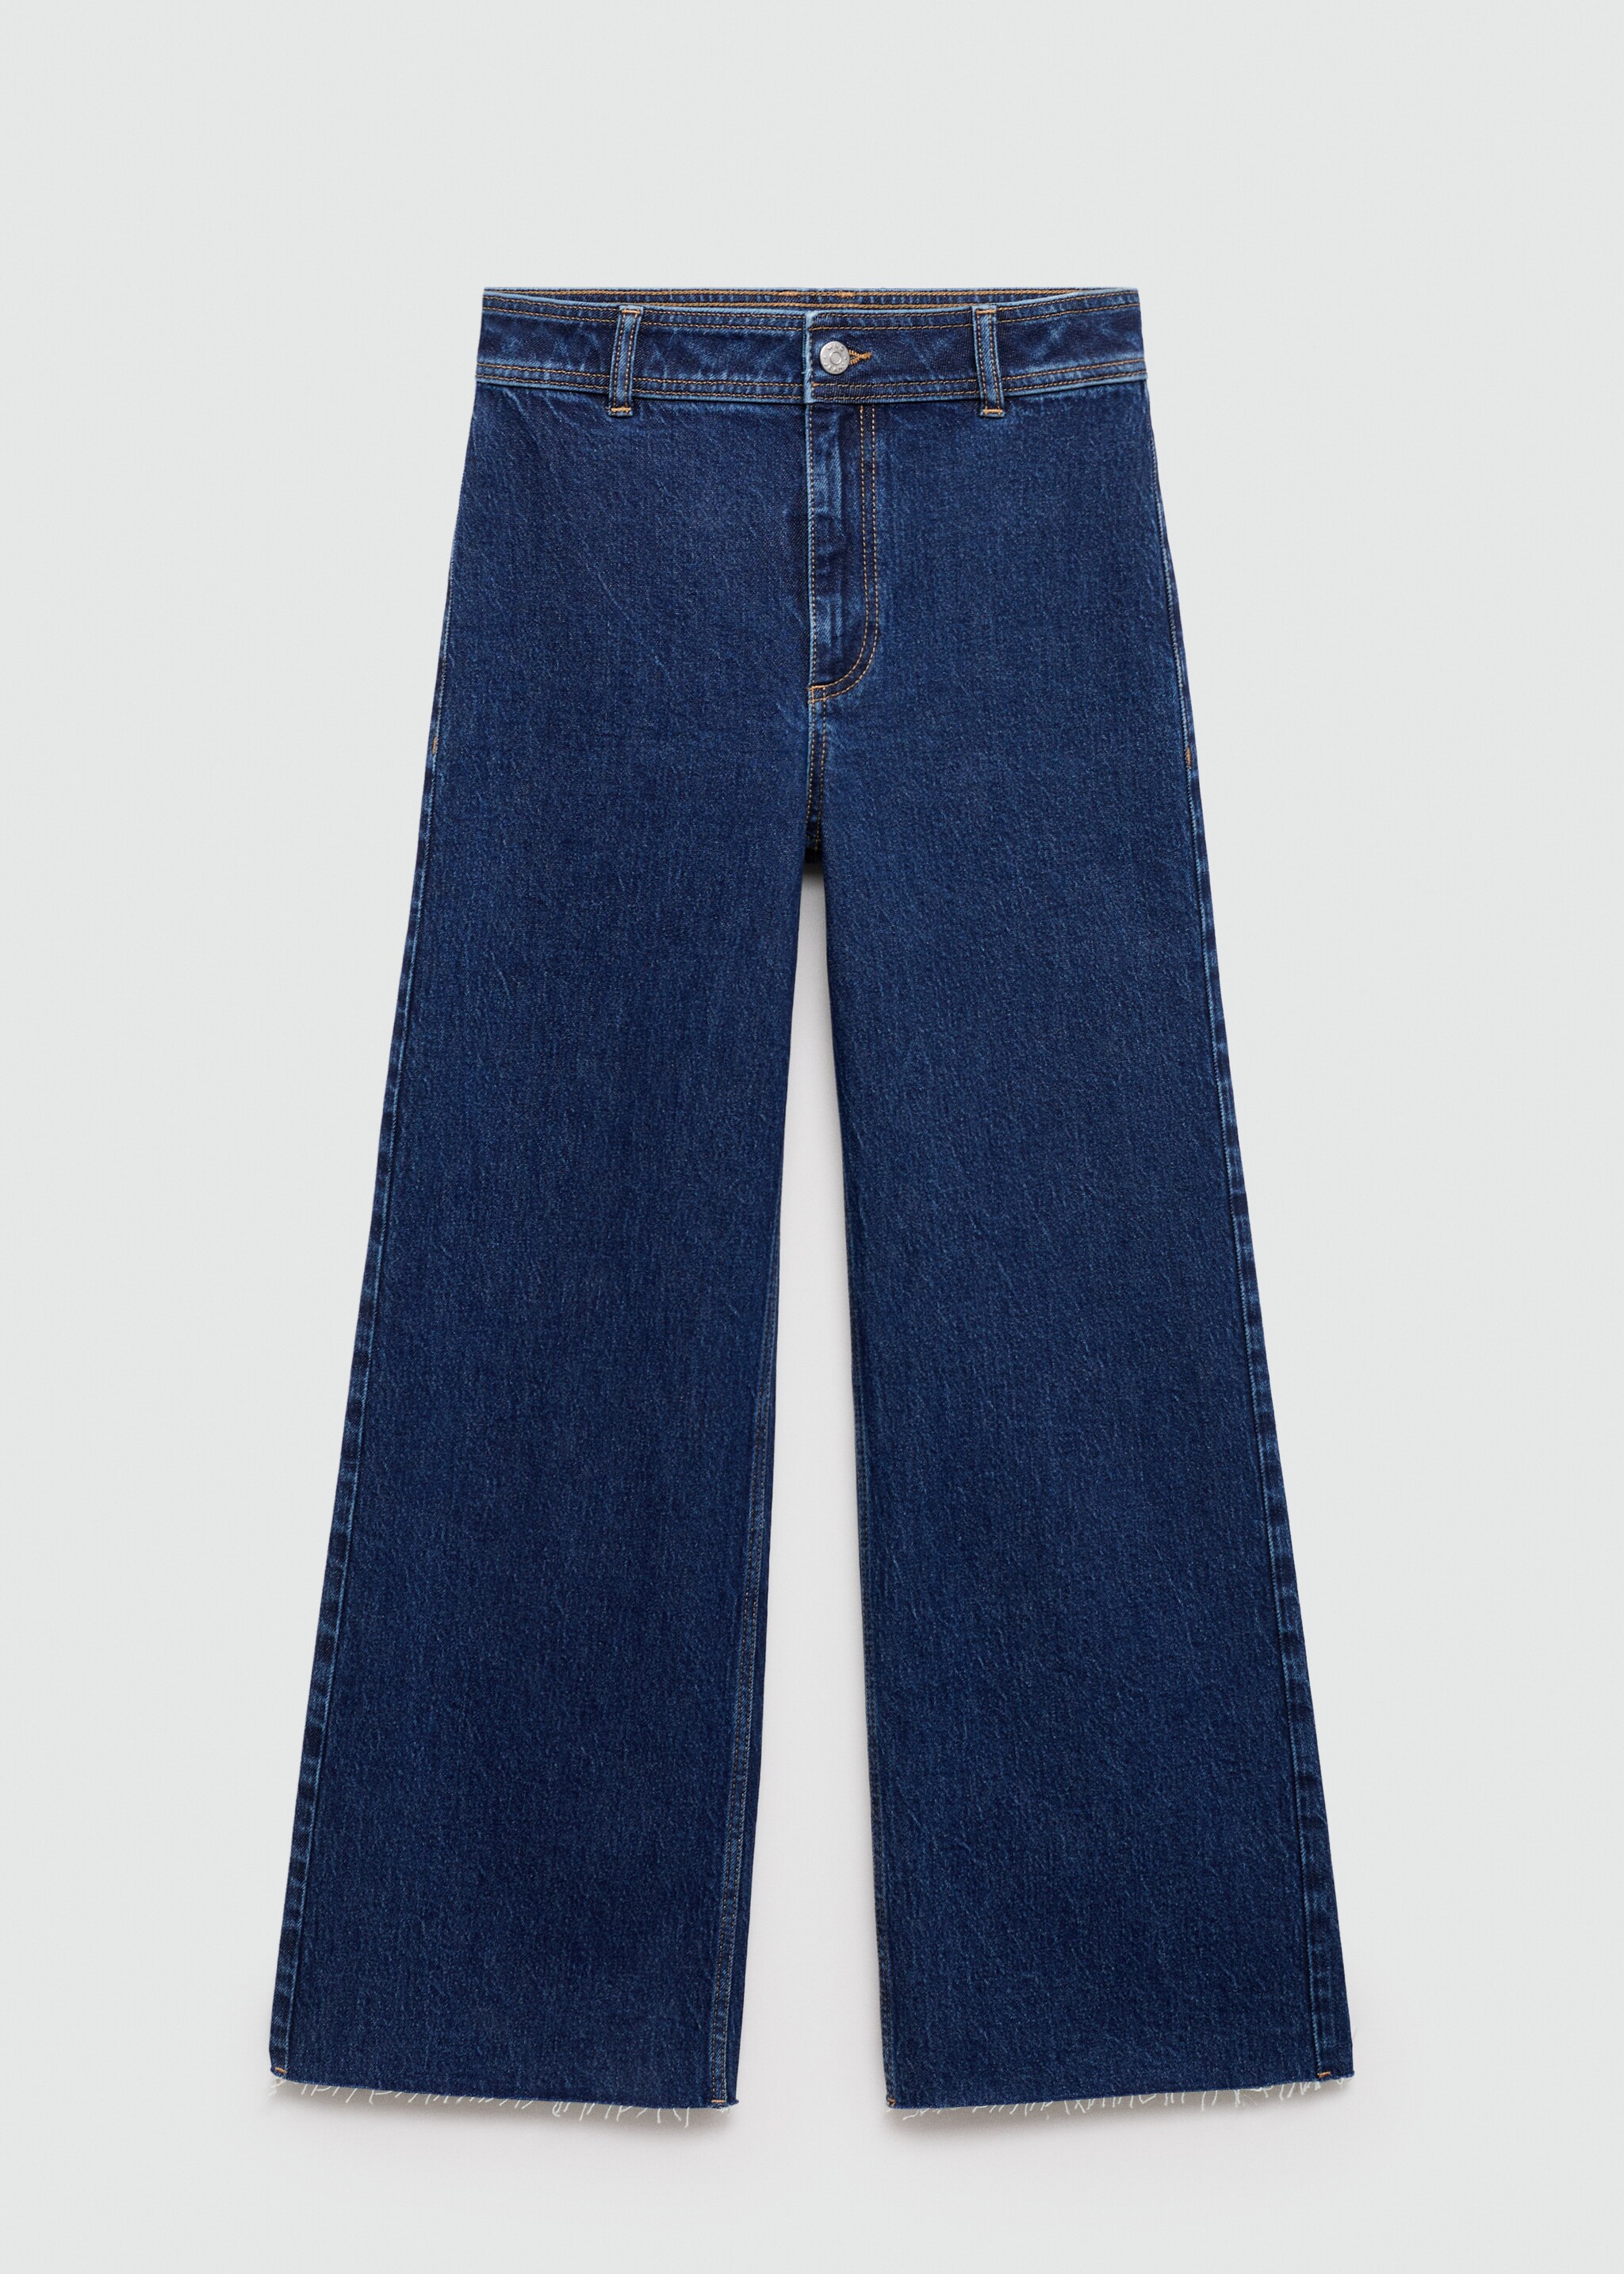 Catherin yüksek belli culotte jean pantolon - Modelsiz ürün